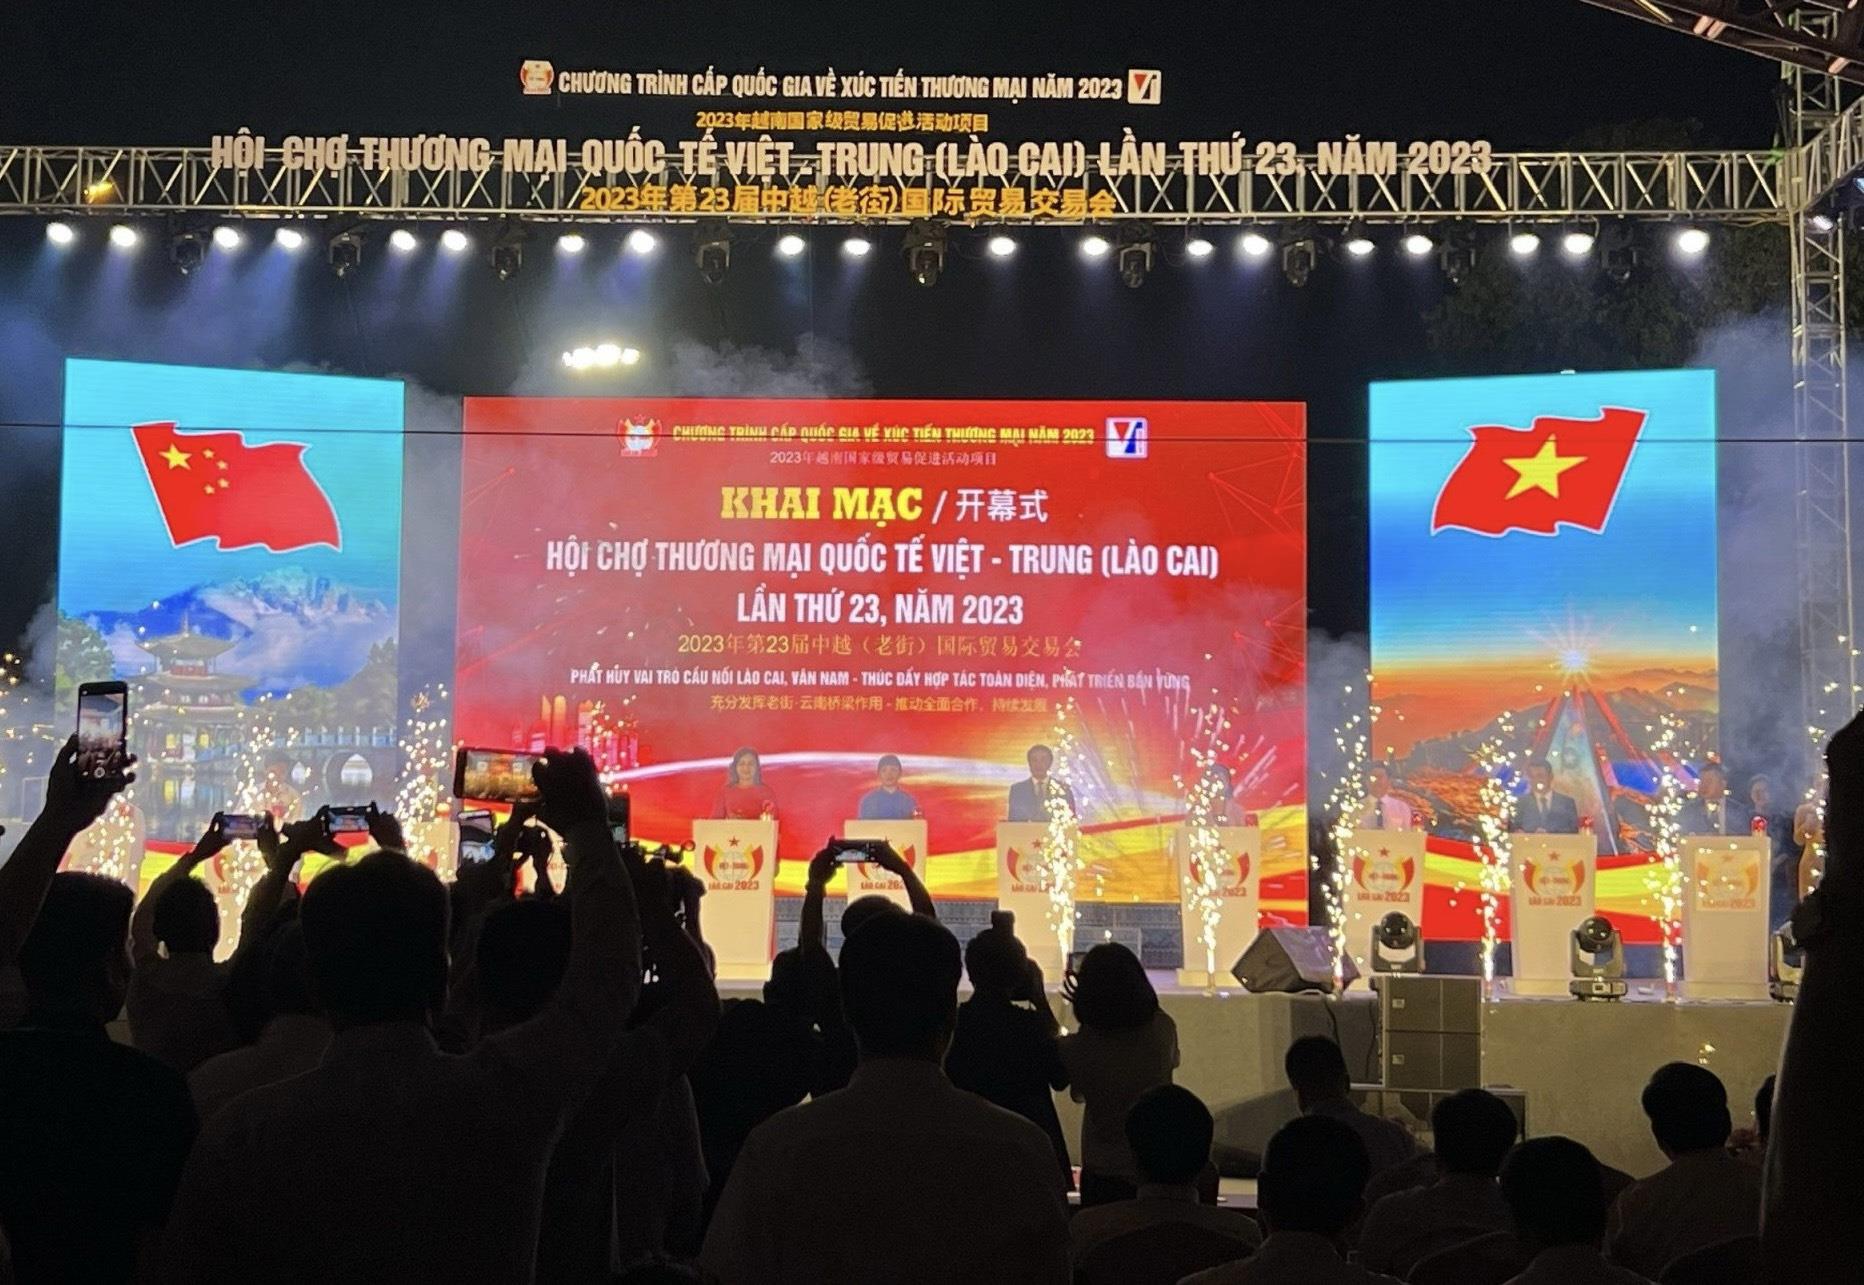 Tỉnh Bắc Giang tham gia hội chợ thương mại quốc tế Việt - Trung (Lào Cai) lần thứ 23 năm 2023